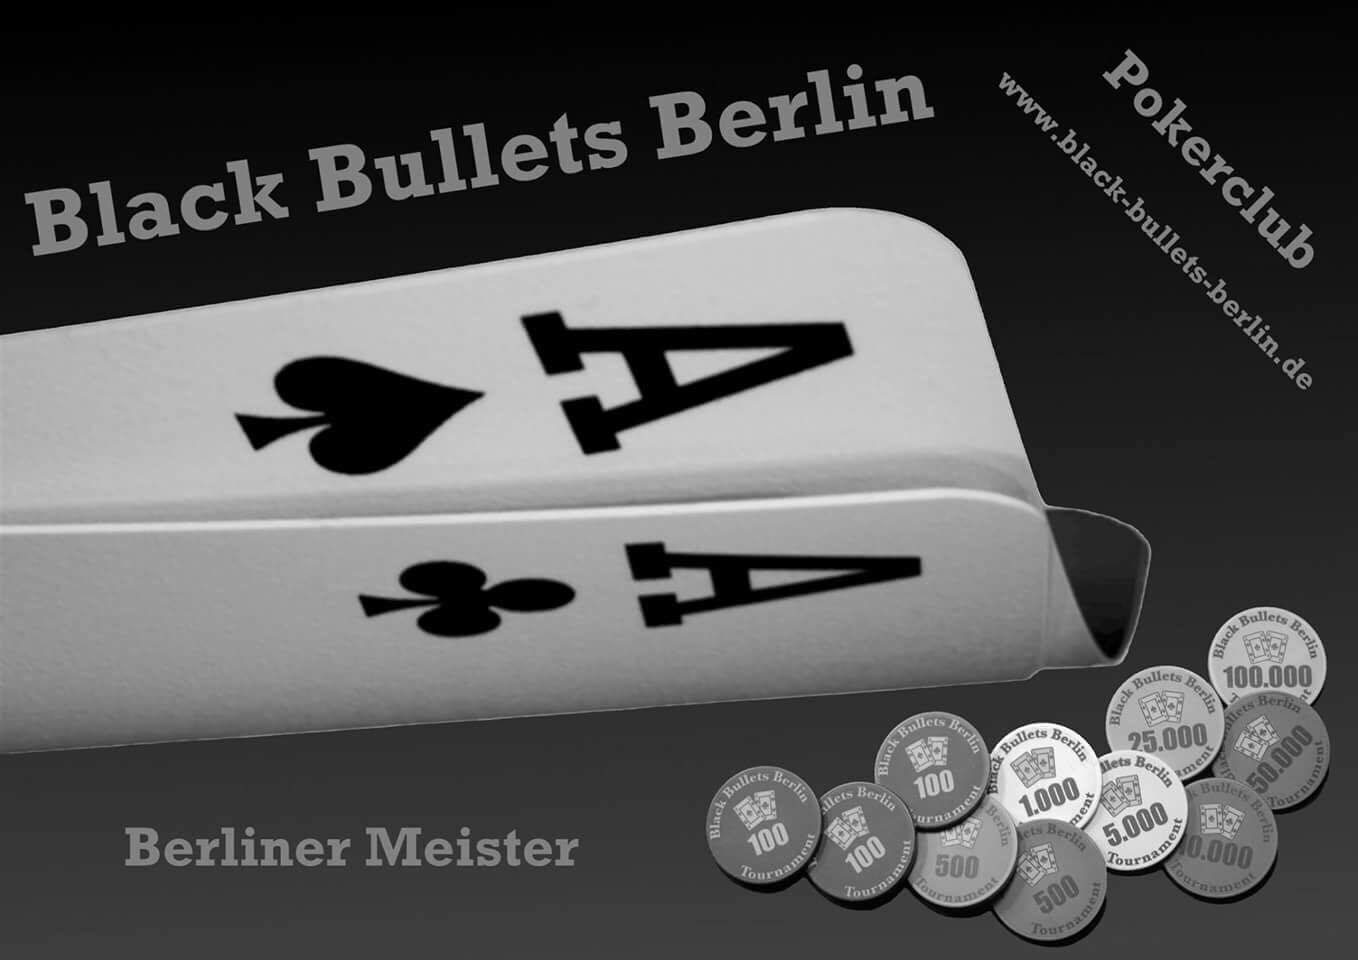 Berliner Meister 2016 : Black Bullets Berlin Team 1